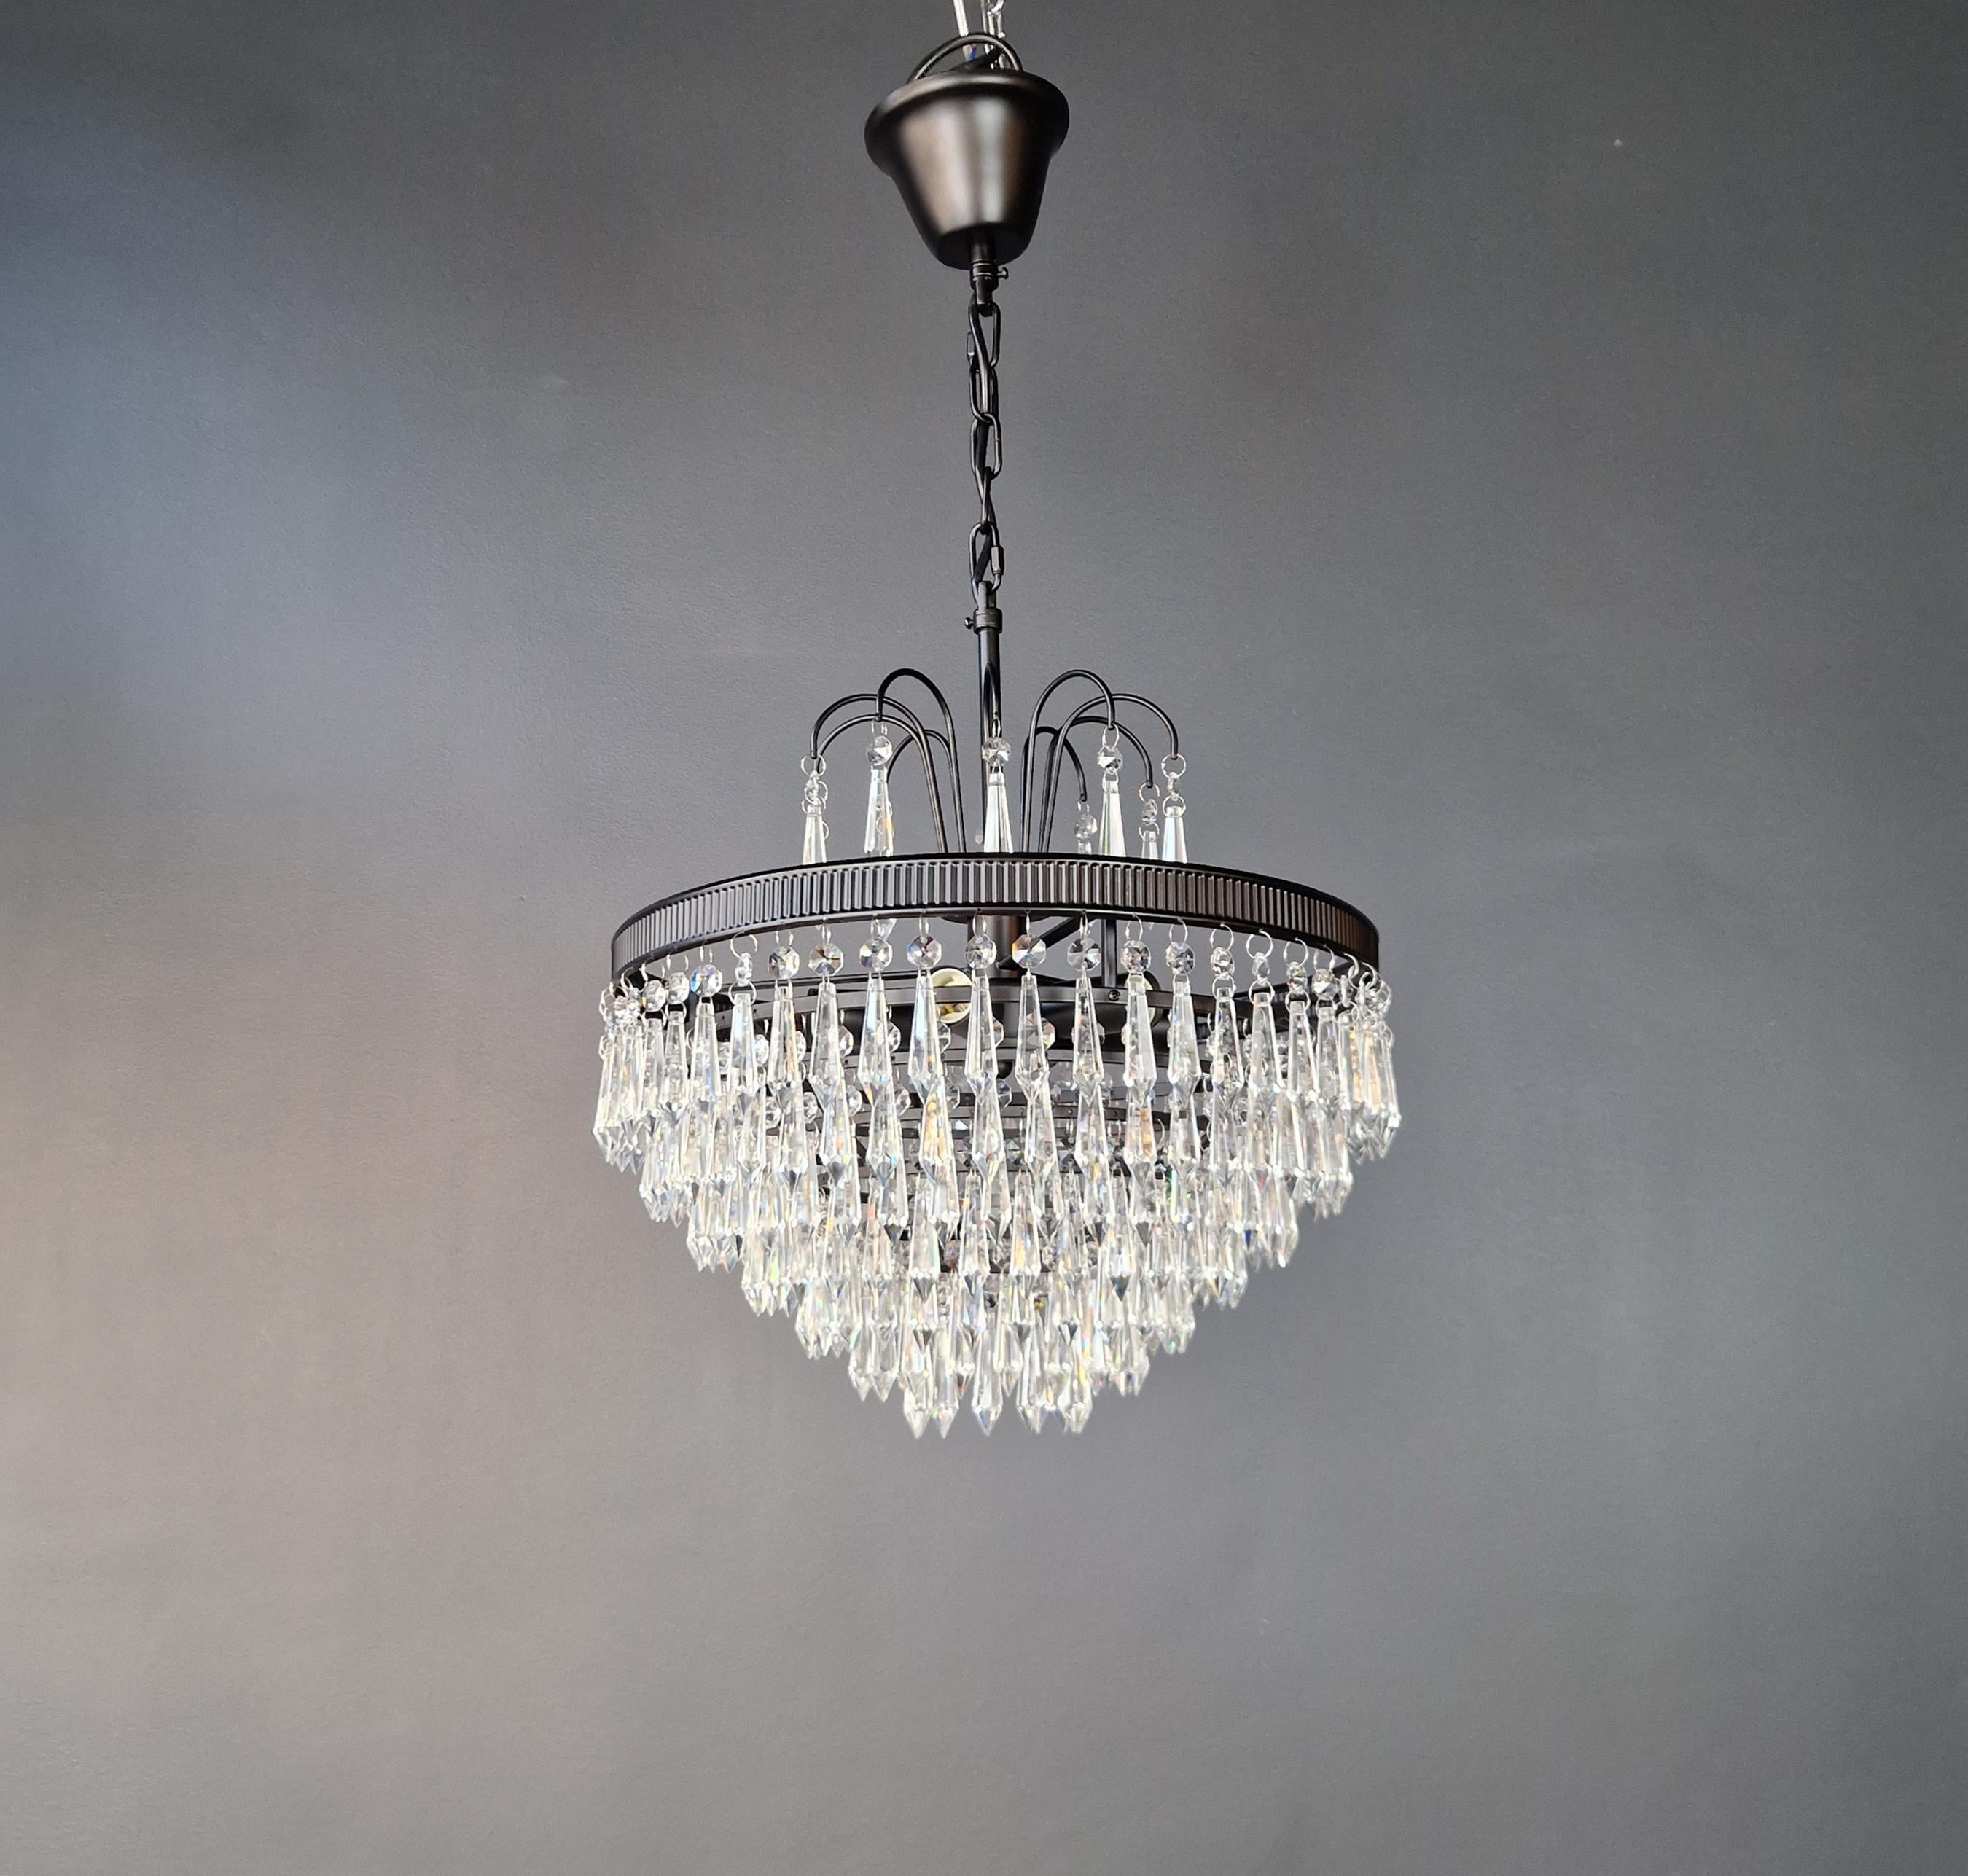 Regency Modern Black Crystal Chandelier Lamp Lustre In New Condition For Sale In Berlin, DE